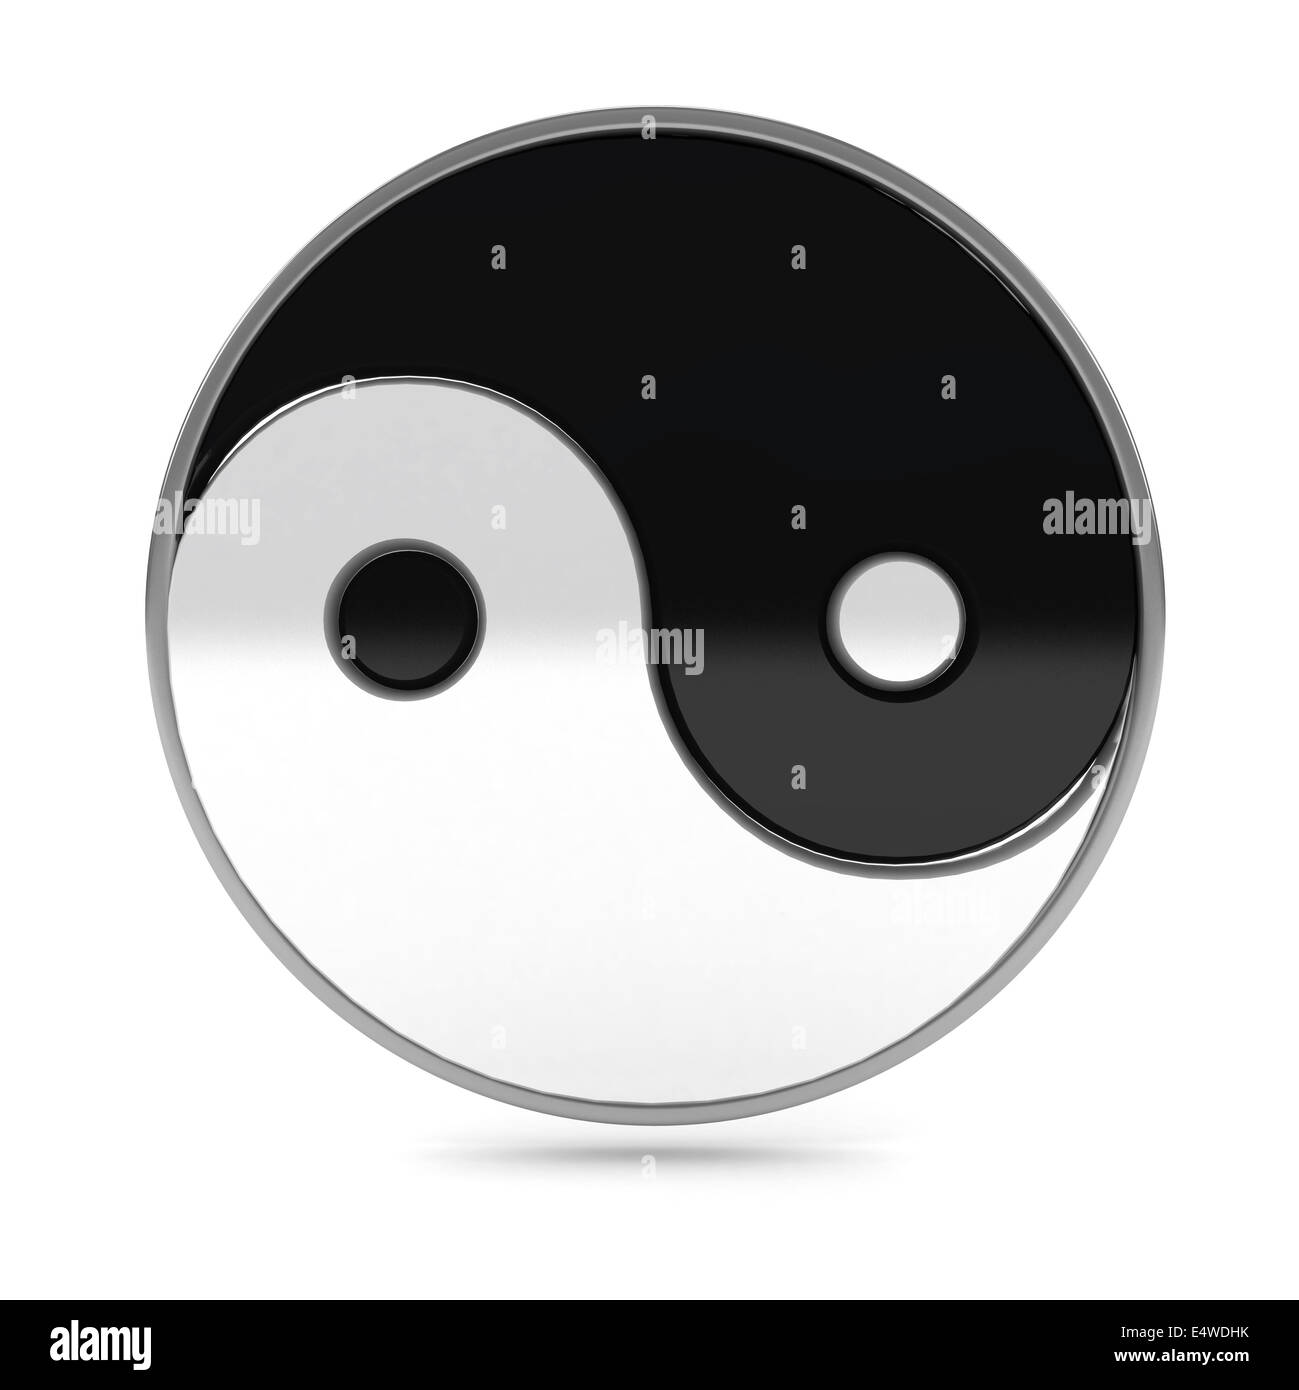 Yin Yang symbol over white background Stock Photo